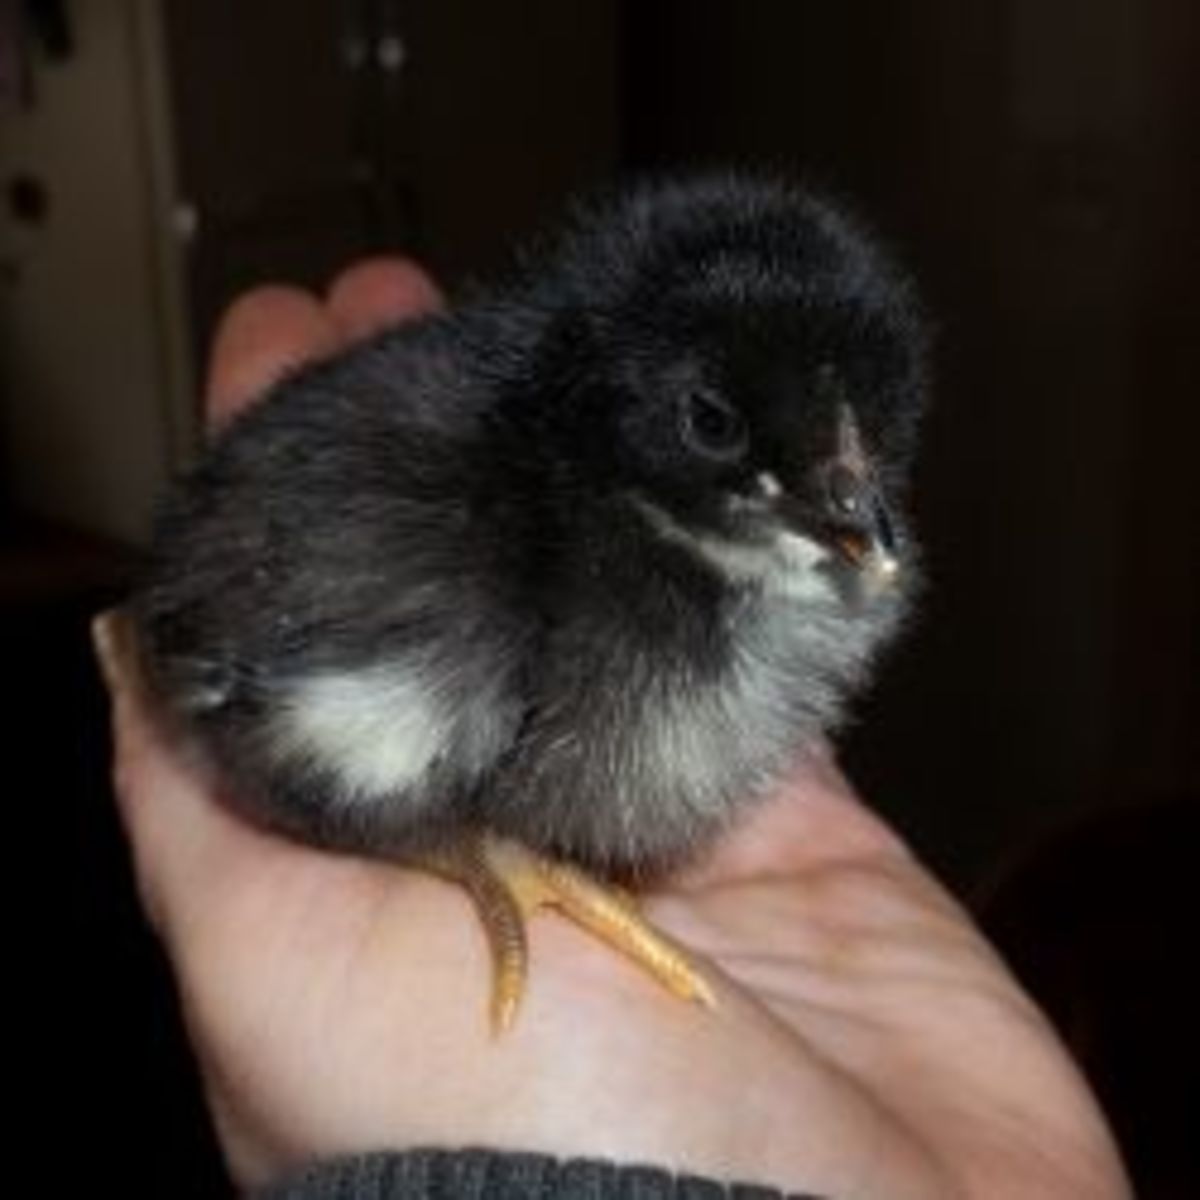 raising-baby-chicks-chickens